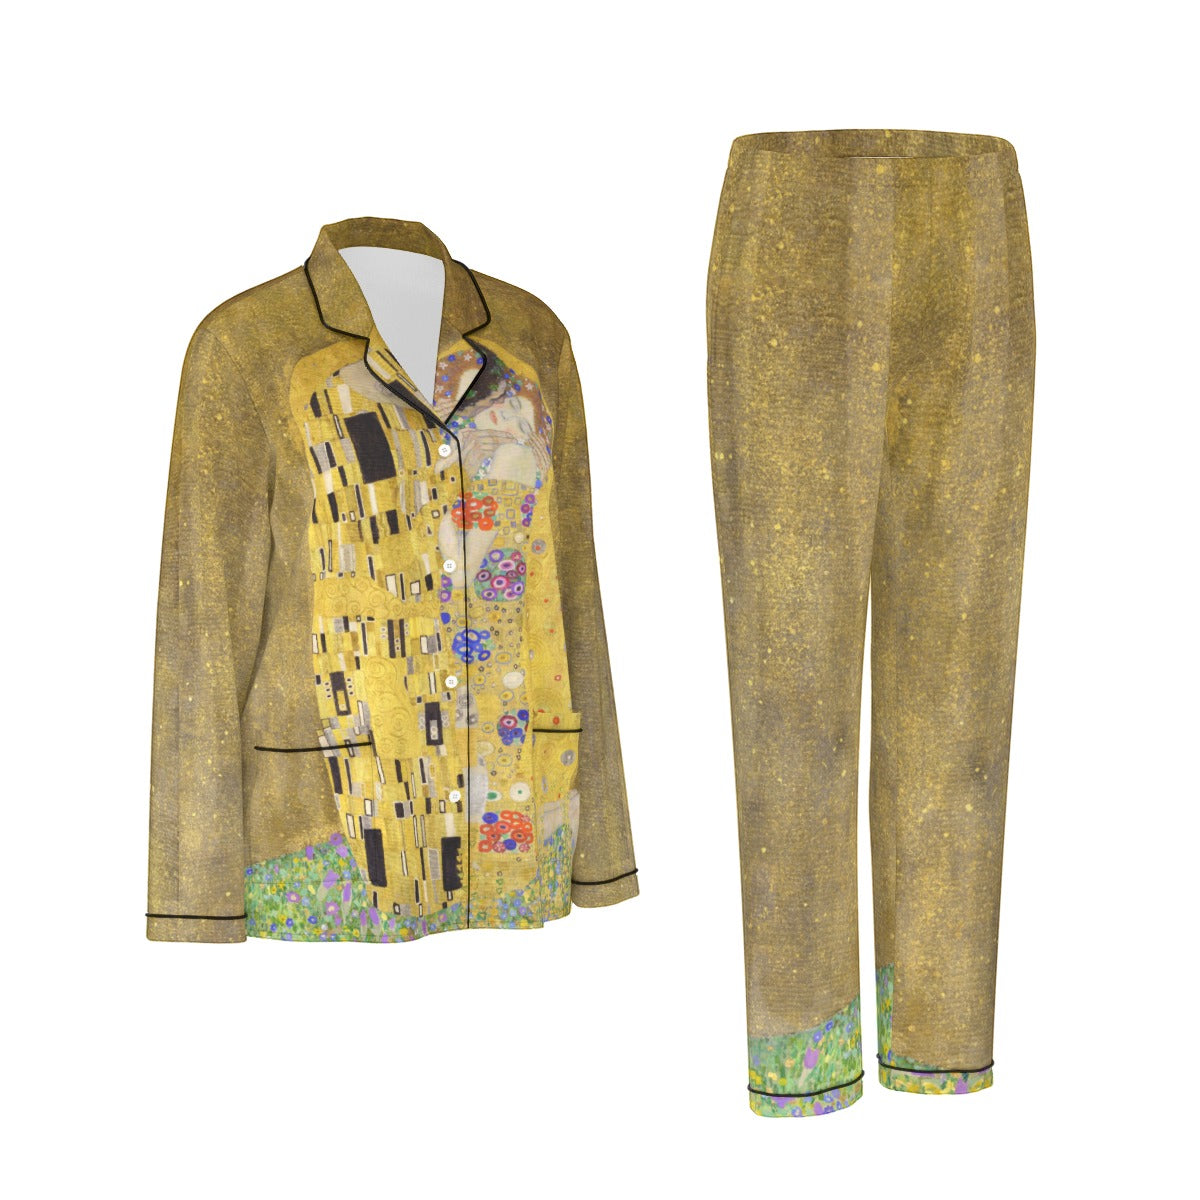 Stylish Gustav Klimt night attire